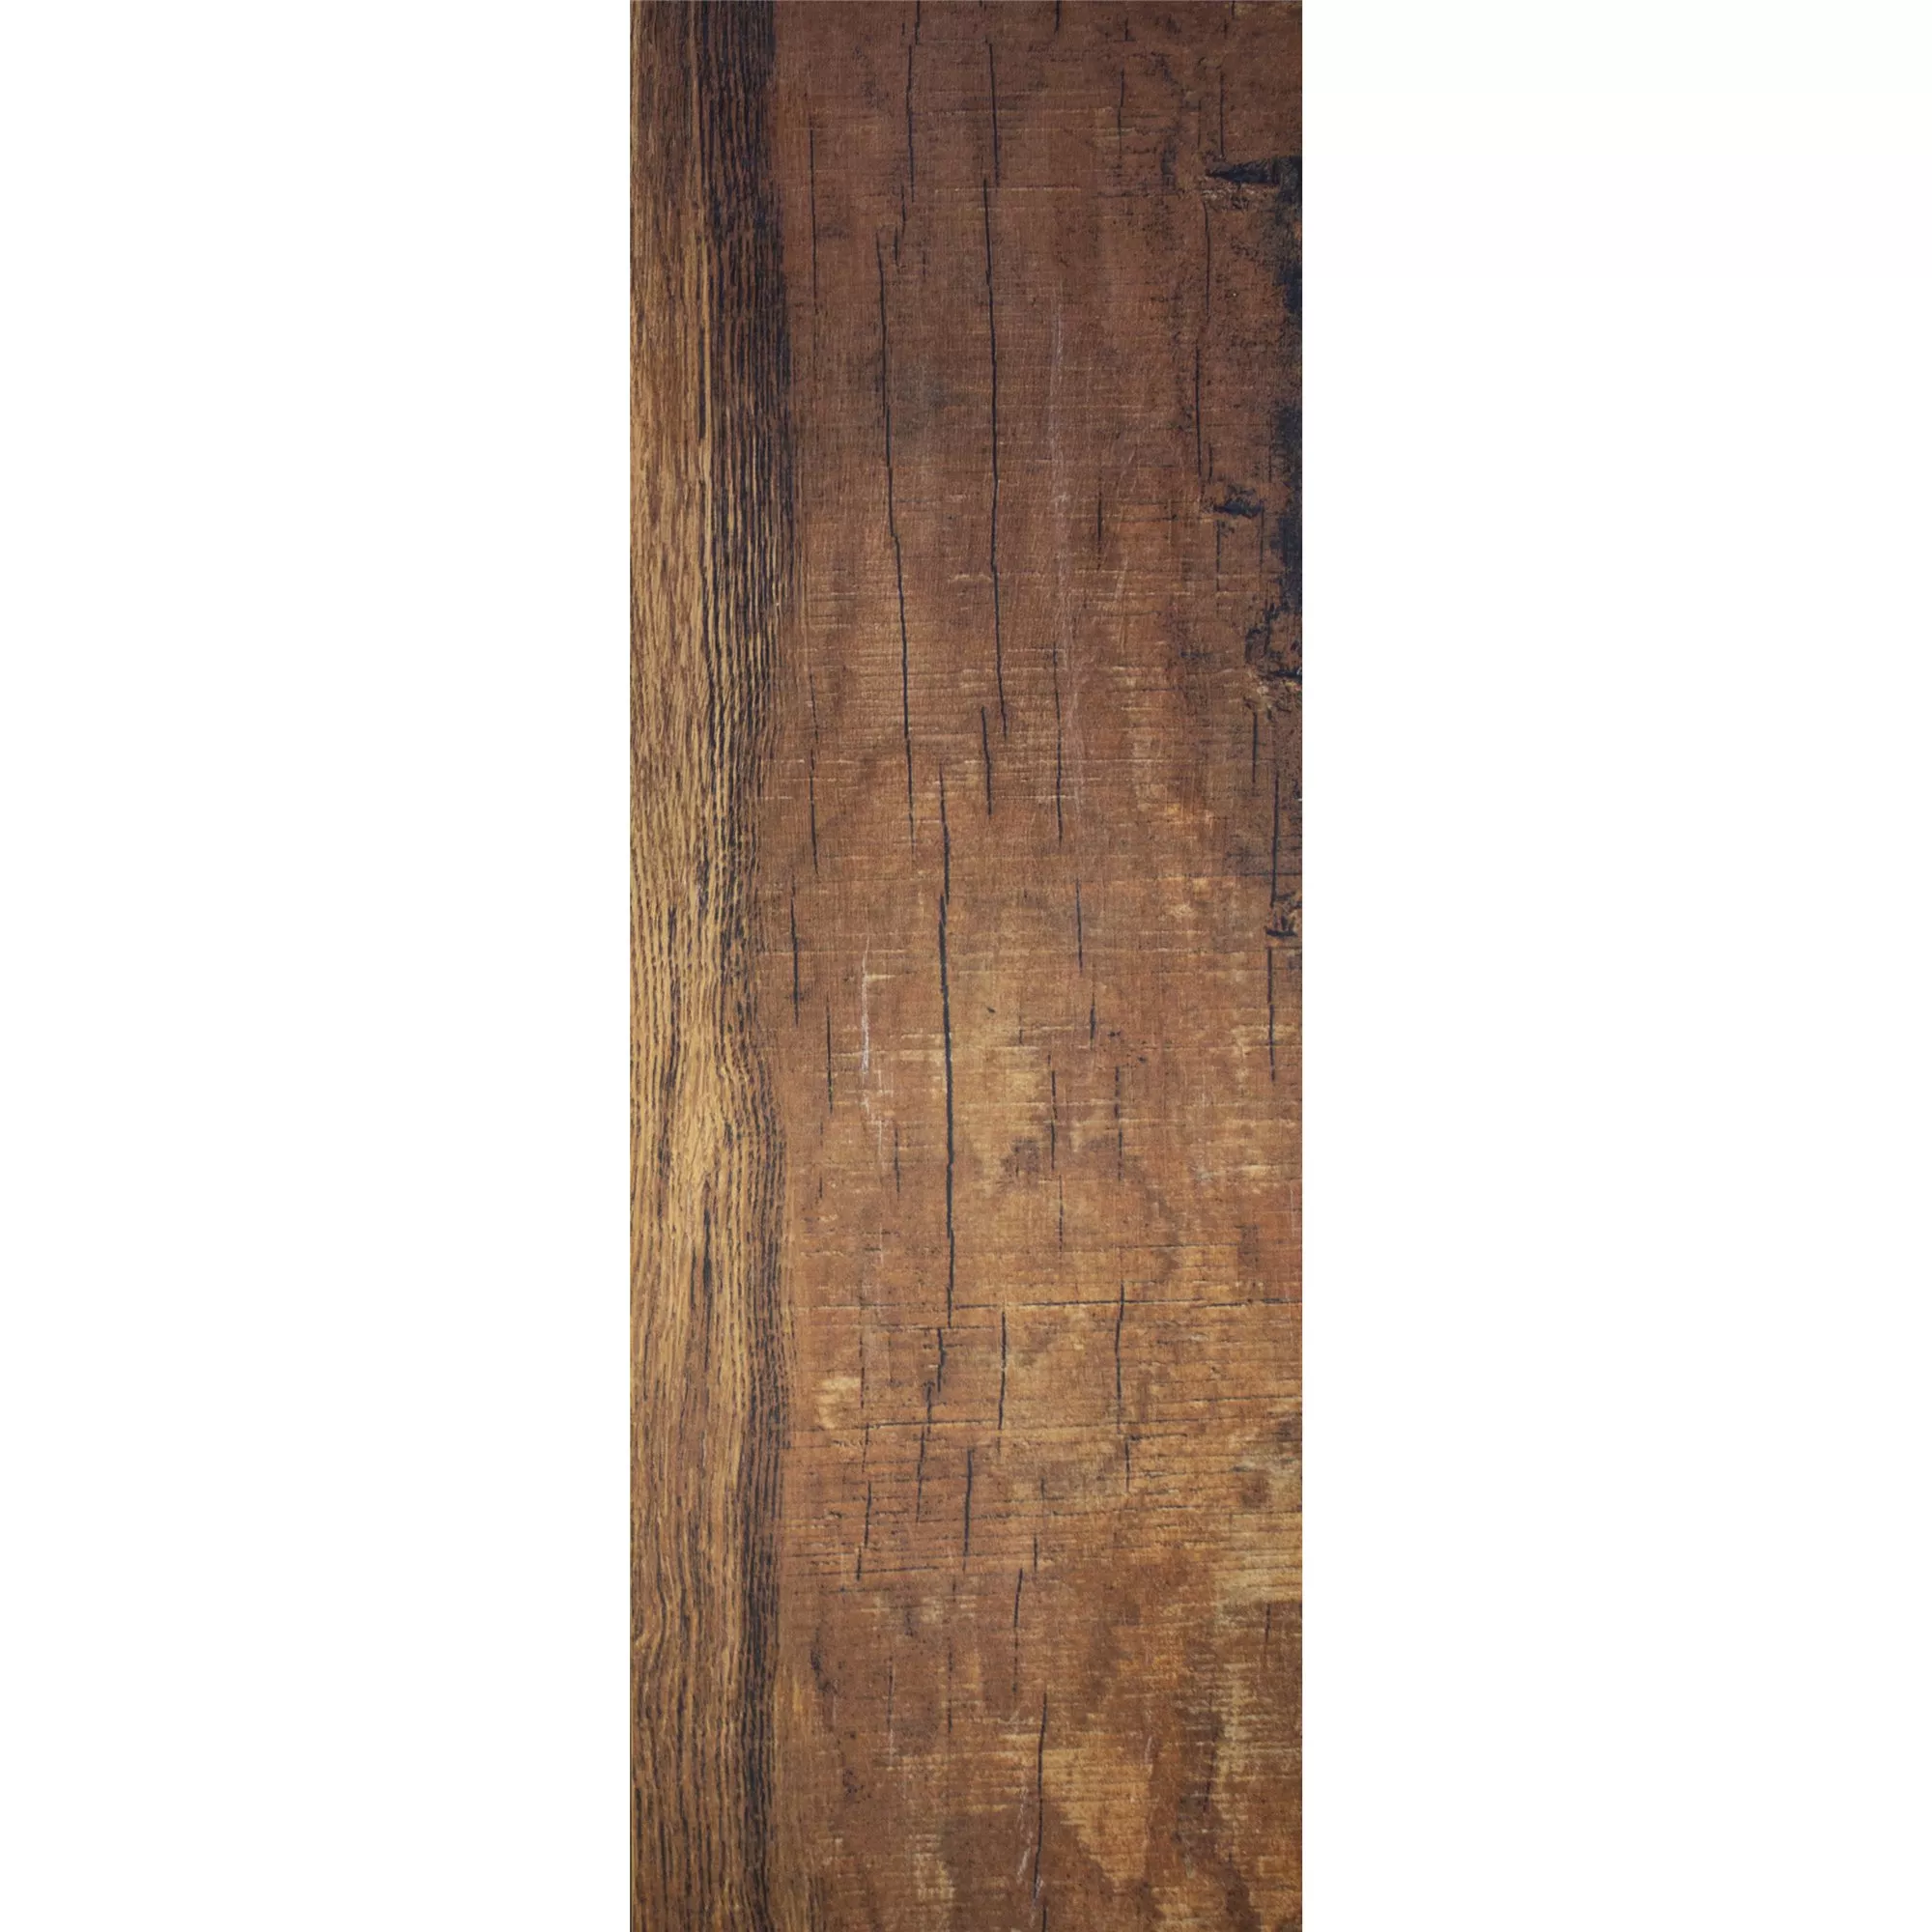 Próbka Płytki Podłogowe Herakles Wygląd Drewna Brown 20x120cm